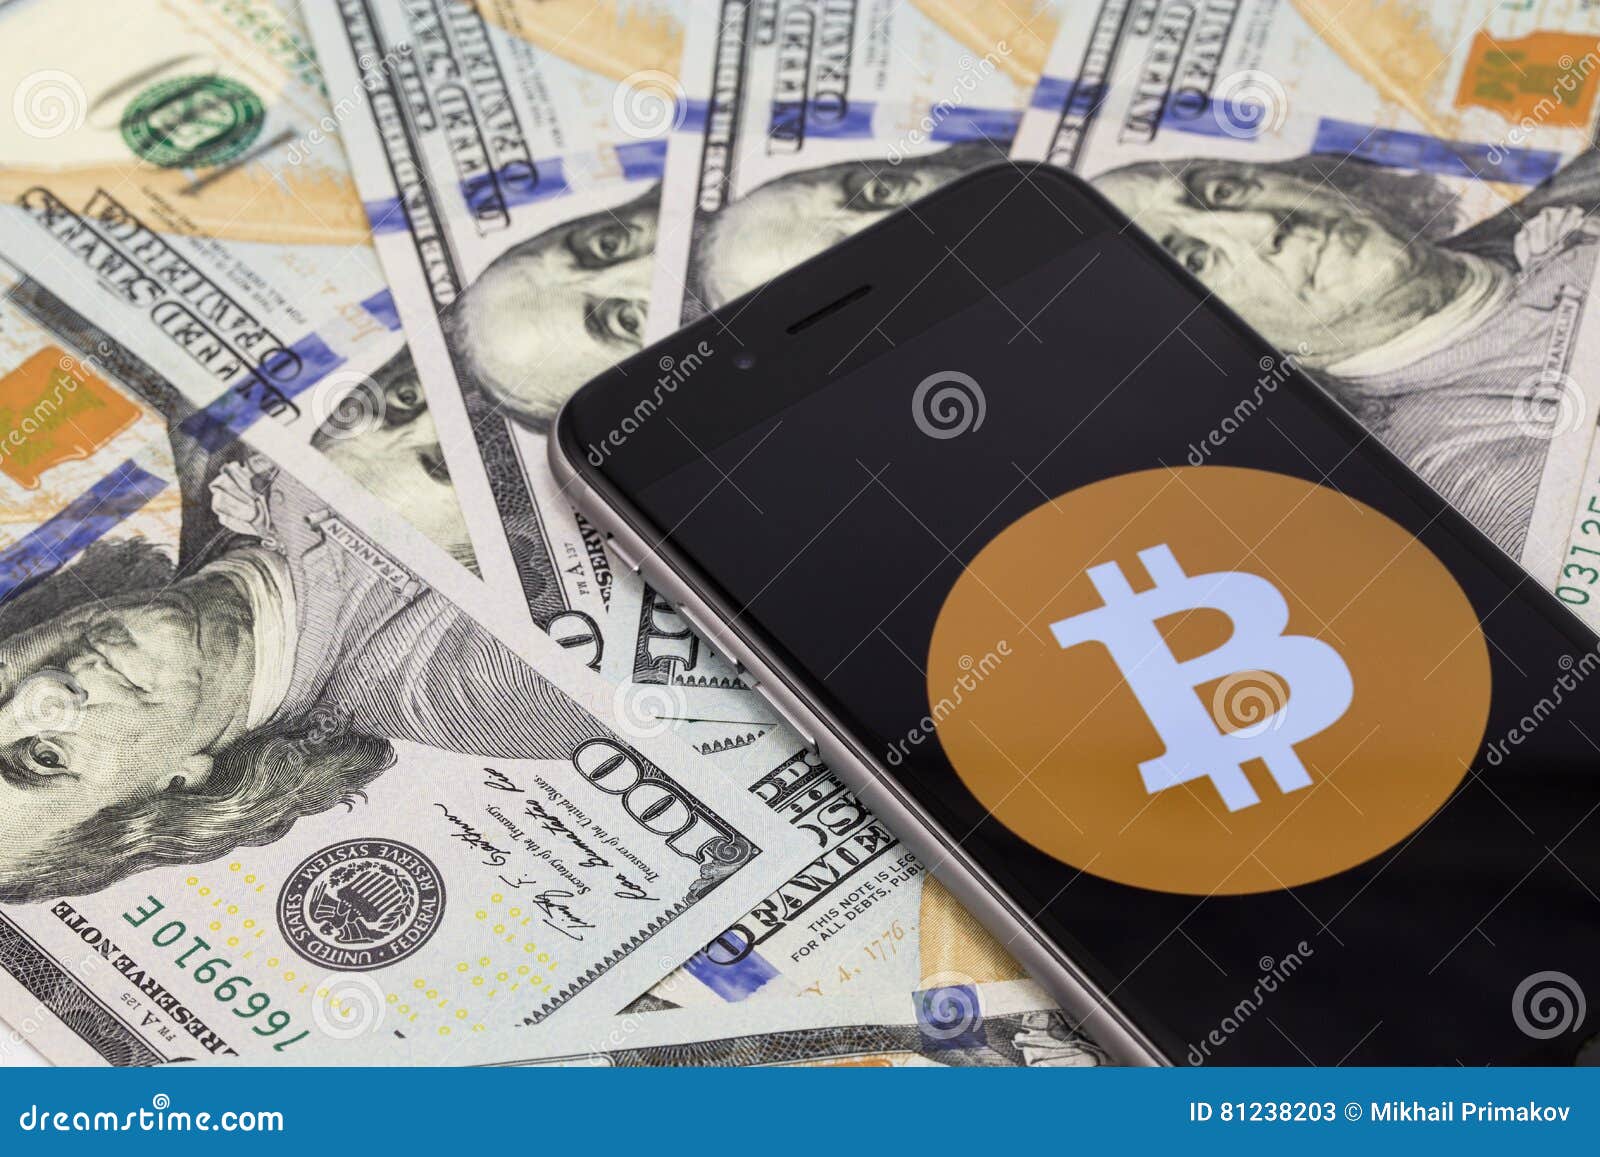 iphone 6s bitcoin wat kost een bitcoin